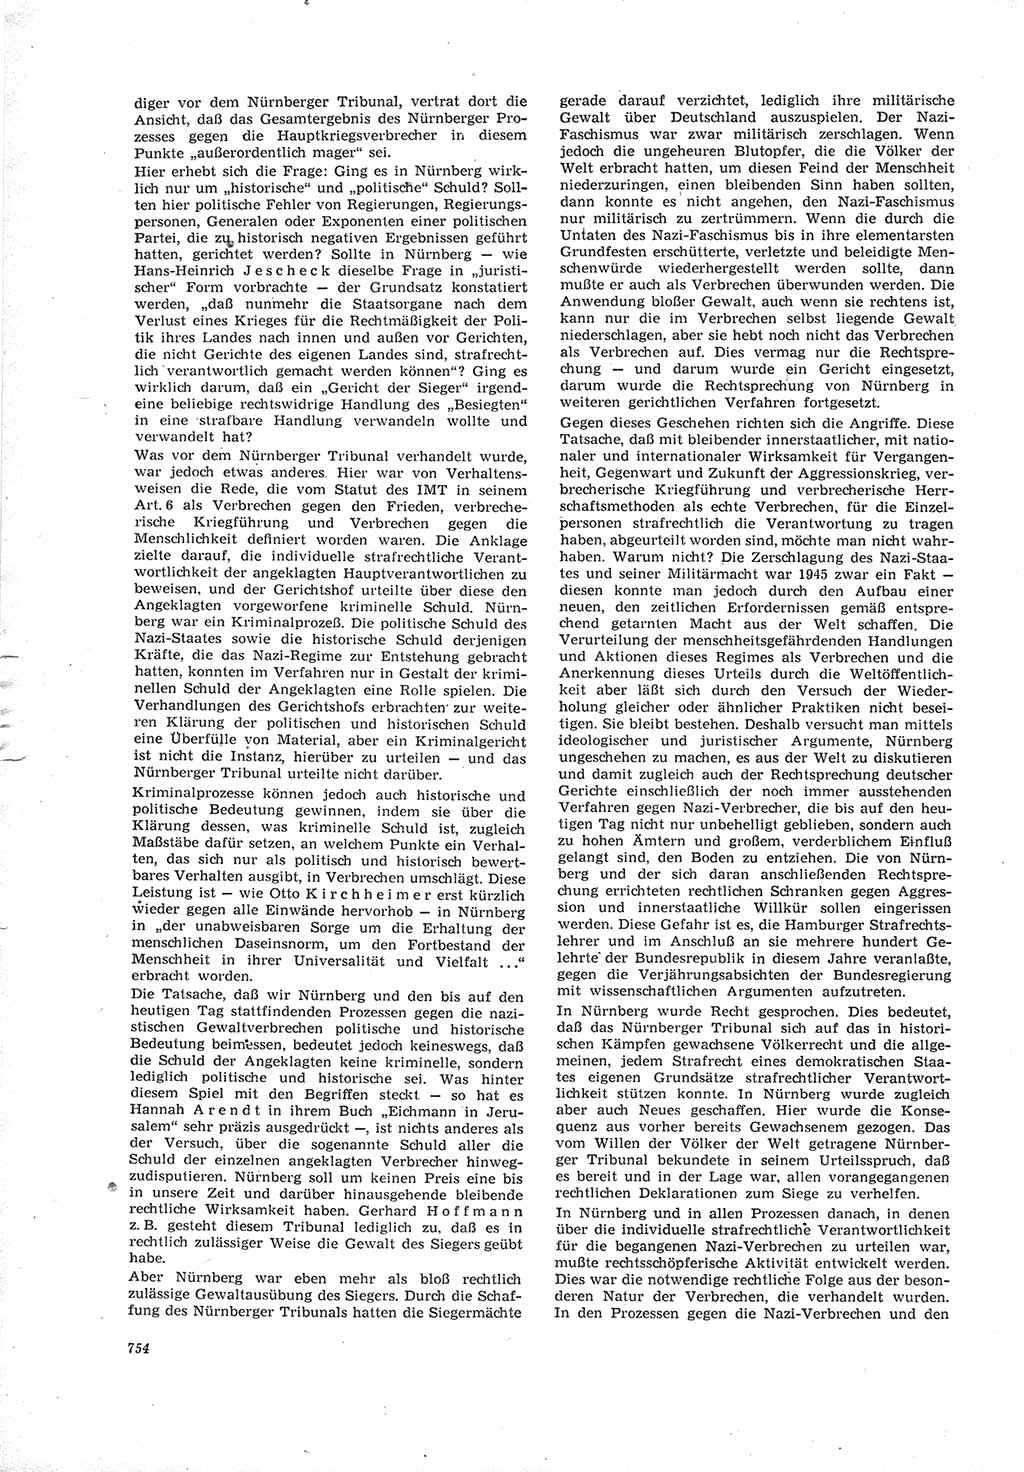 Neue Justiz (NJ), Zeitschrift für Recht und Rechtswissenschaft [Deutsche Demokratische Republik (DDR)], 19. Jahrgang 1965, Seite 754 (NJ DDR 1965, S. 754)